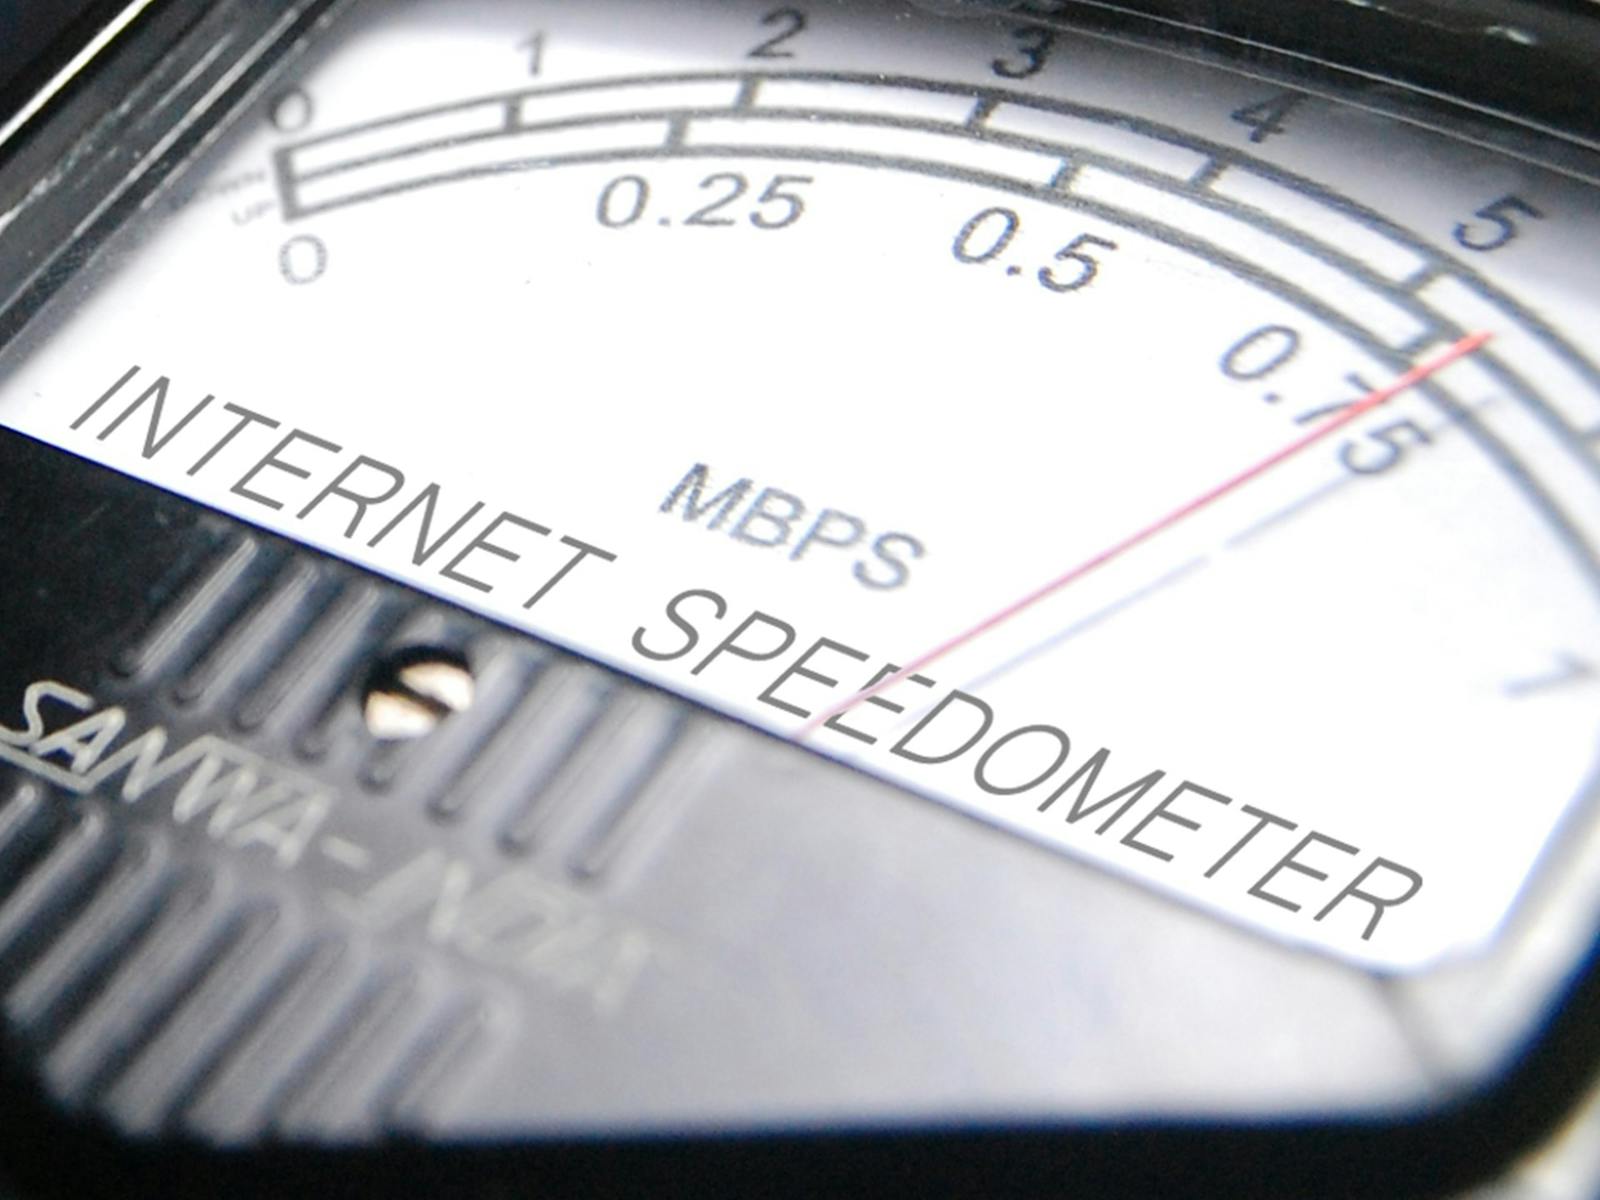 internet connection speedometer test